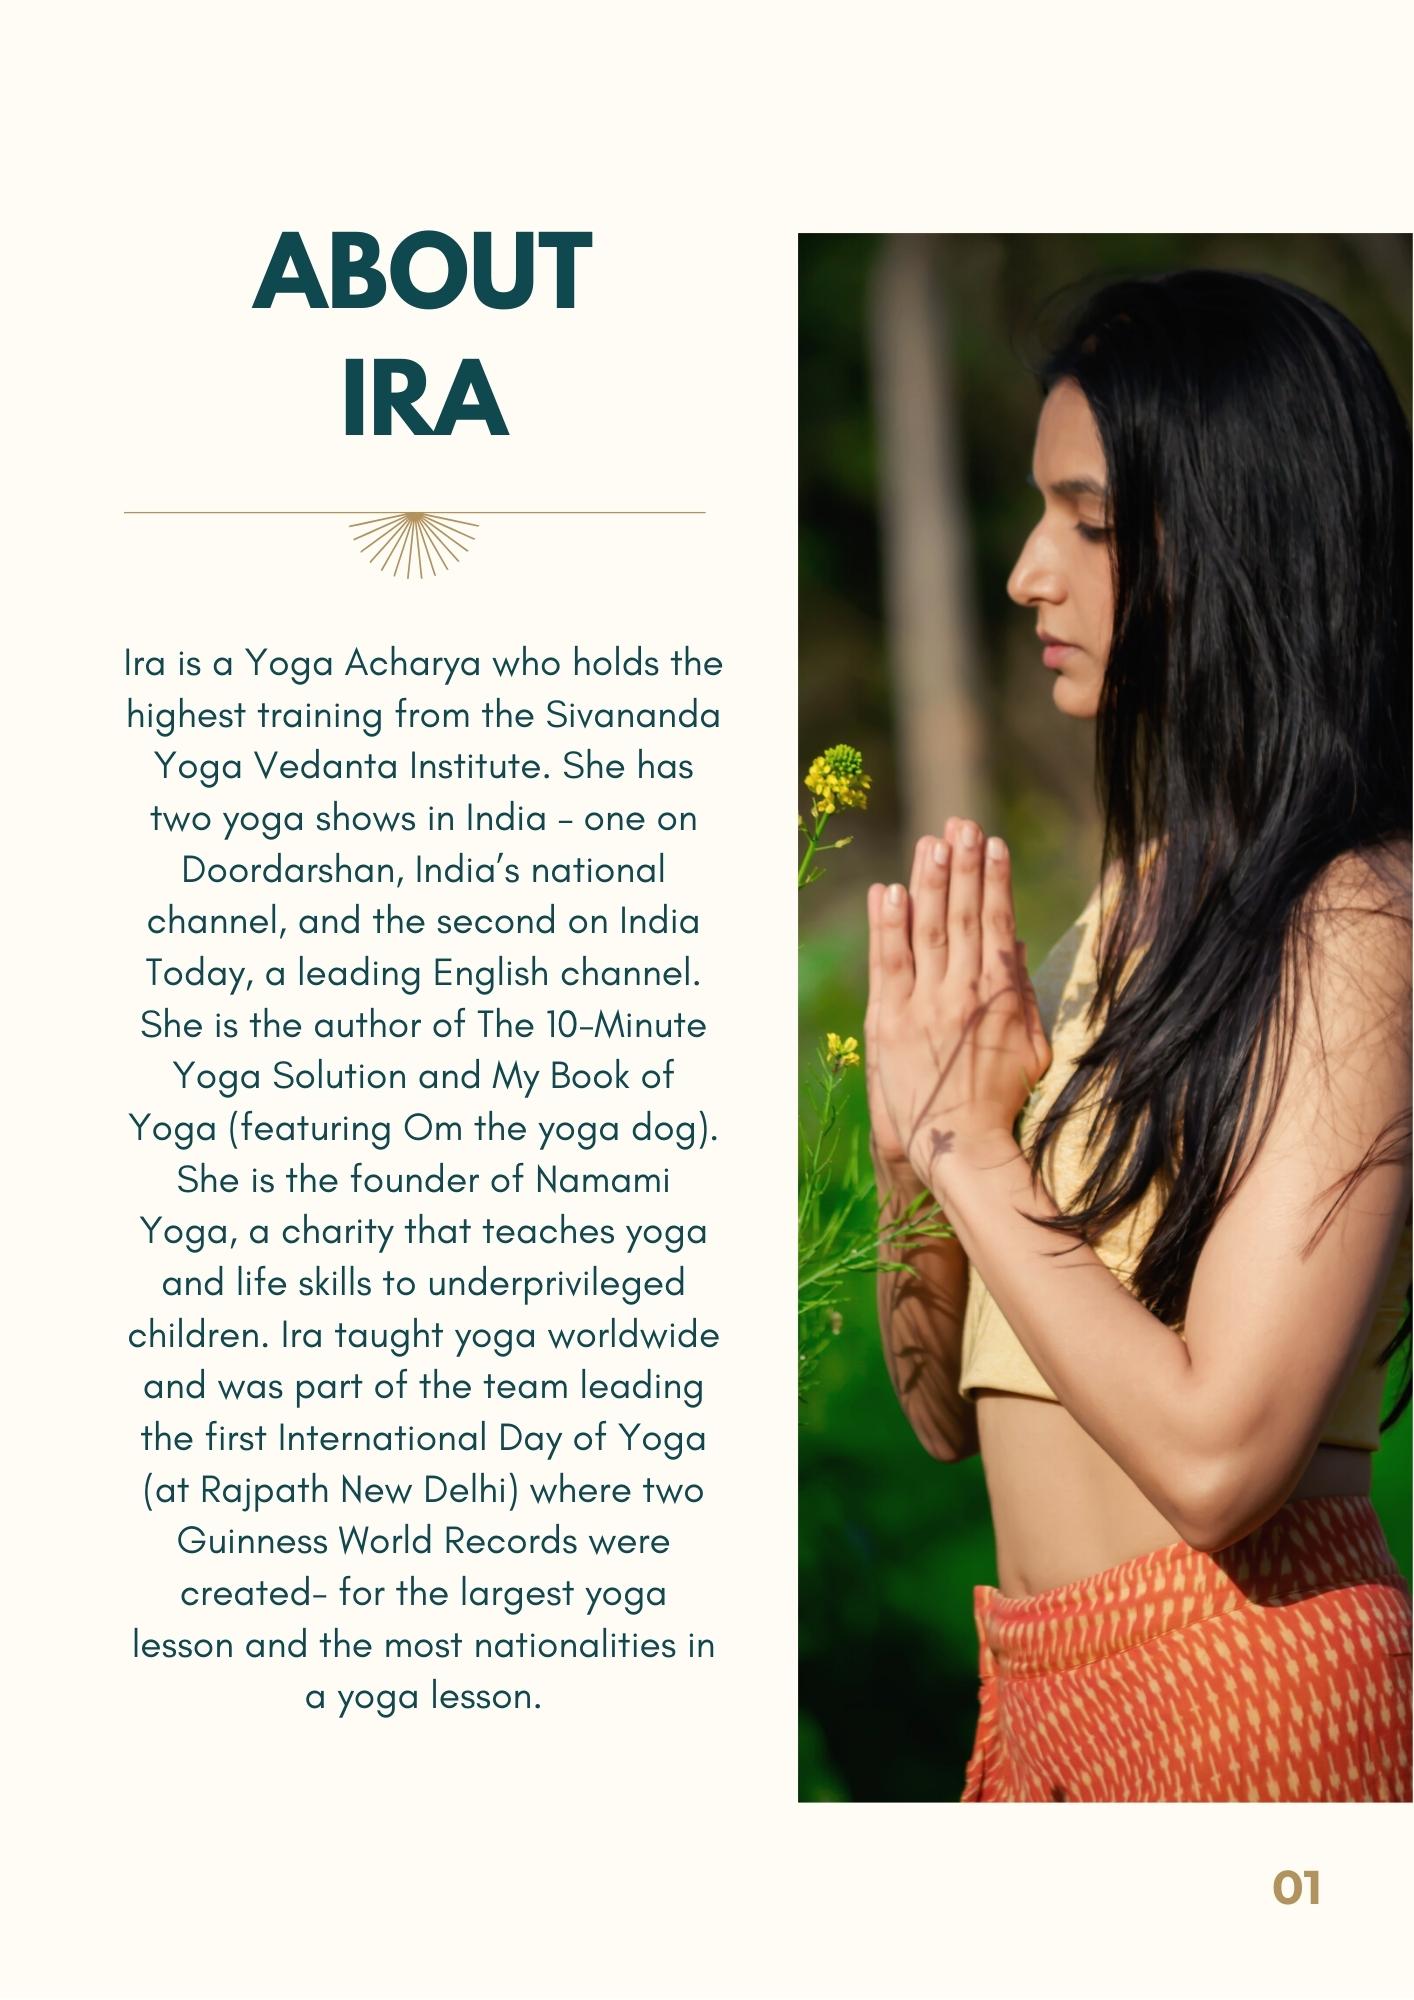 Yoga Retreat with Ira - about IRA